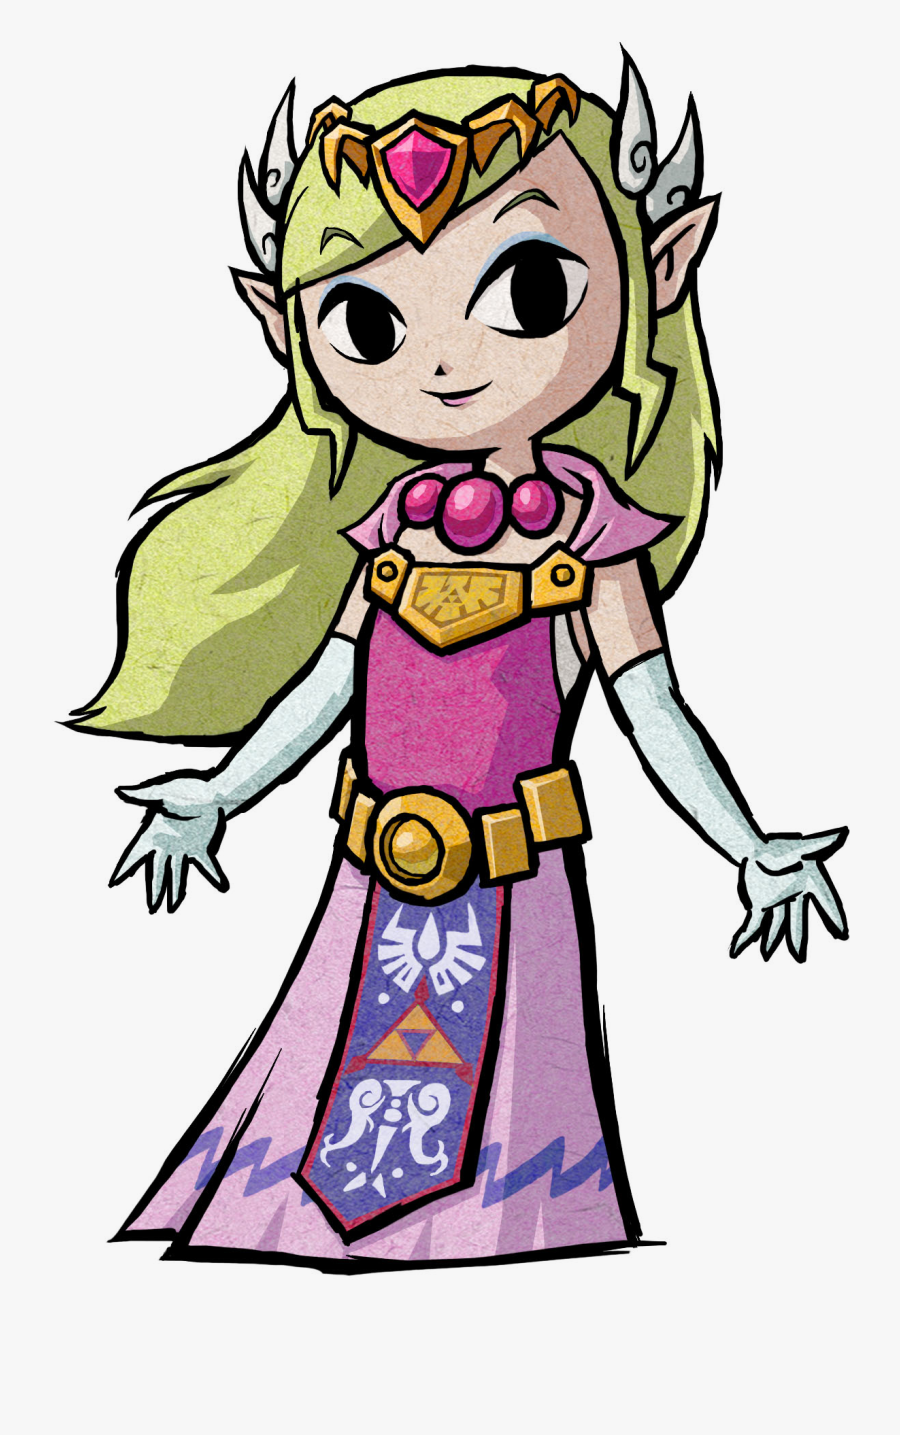 Image Zelda The Of - Loz Wind Waker Zelda, Transparent Clipart